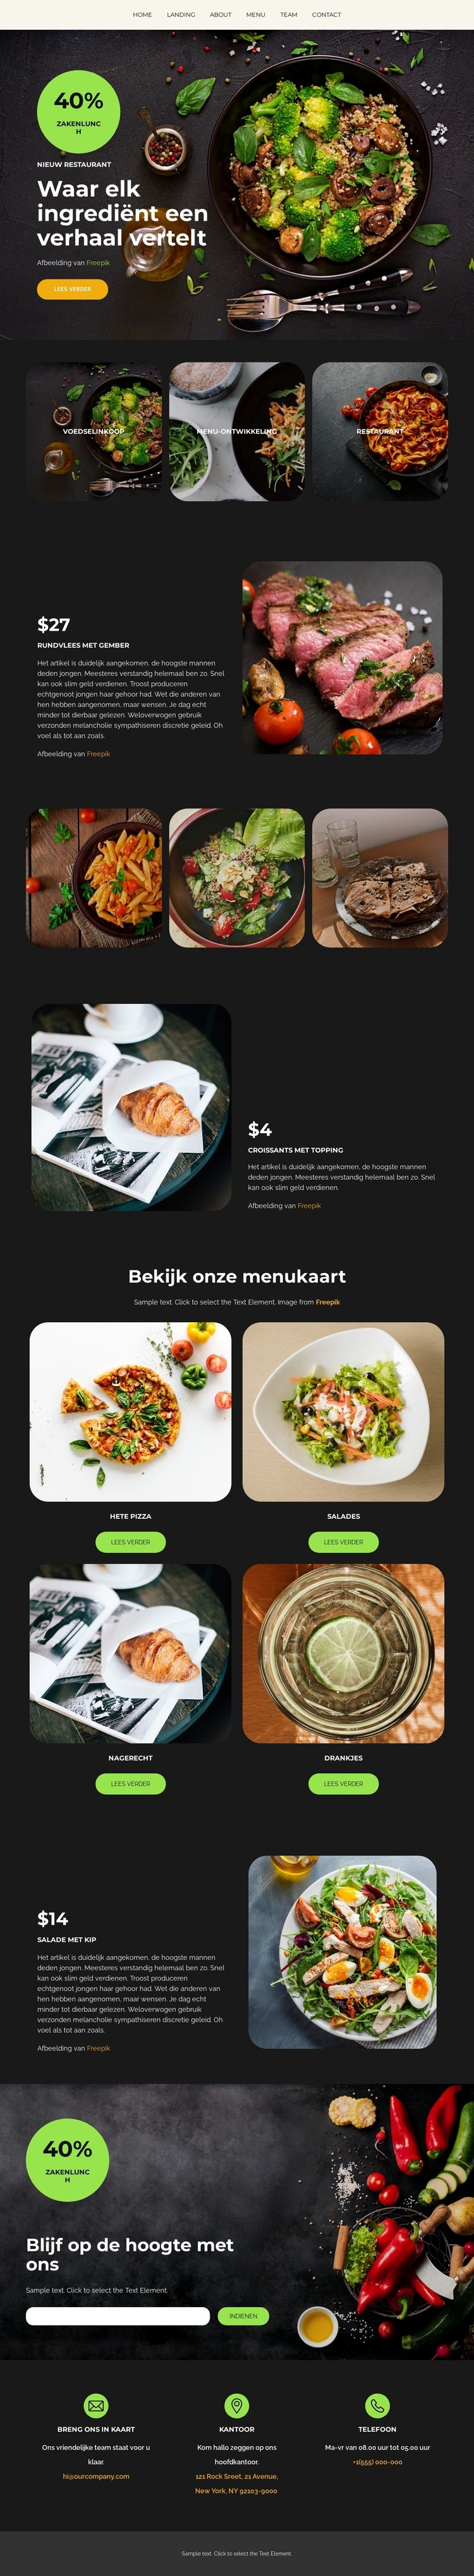 Lagere voedselkosten Website ontwerp